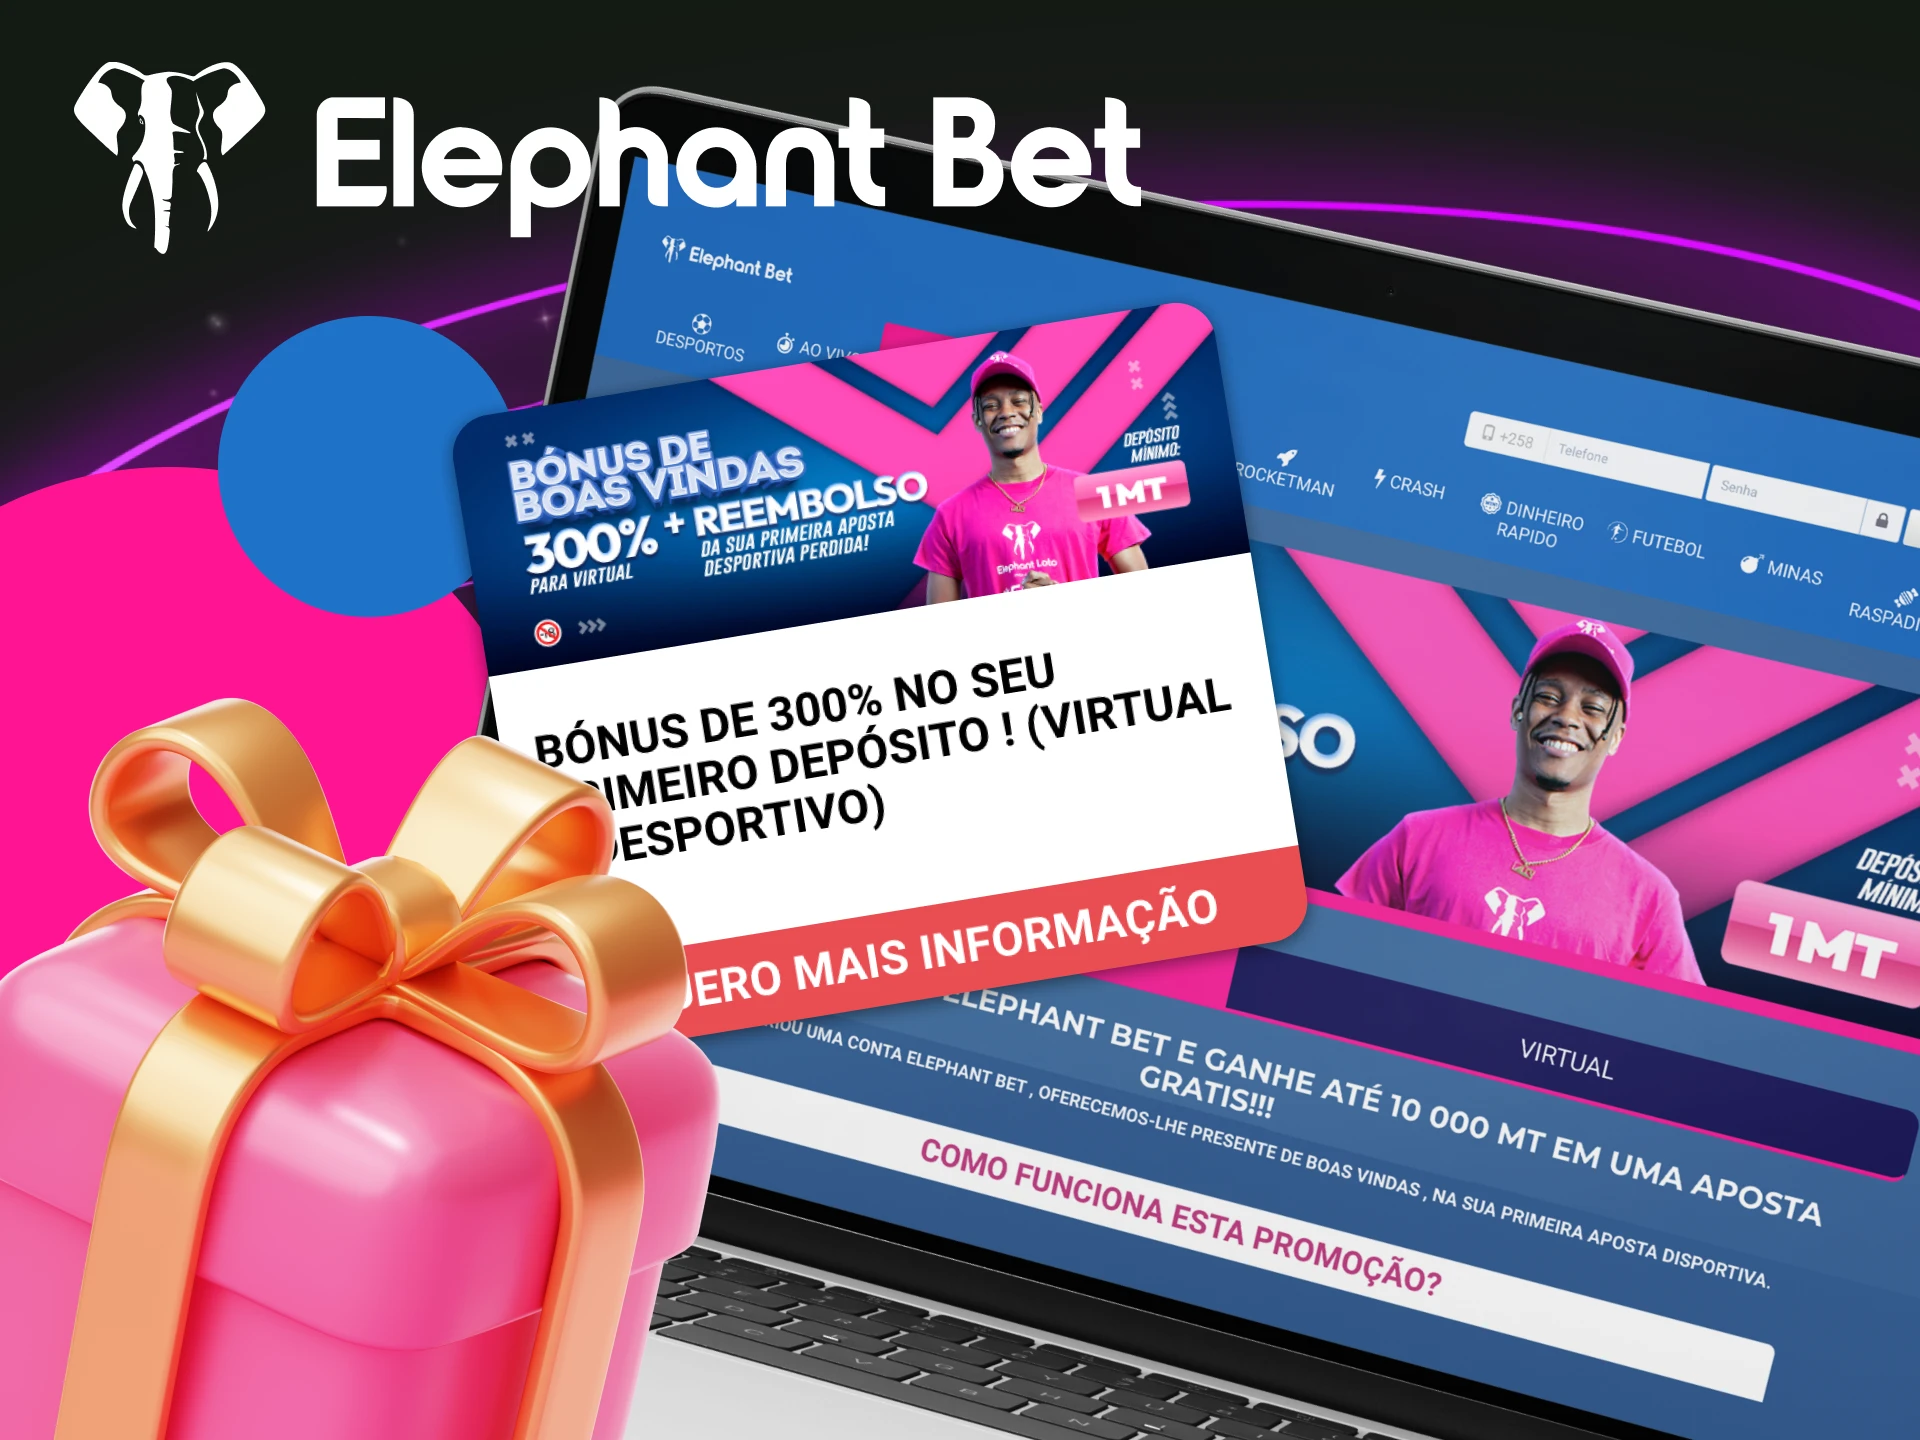 Qual e o bonus de primeiro deposito em jogos virtuais para novos usuarios no cassino online Elephant Bet.